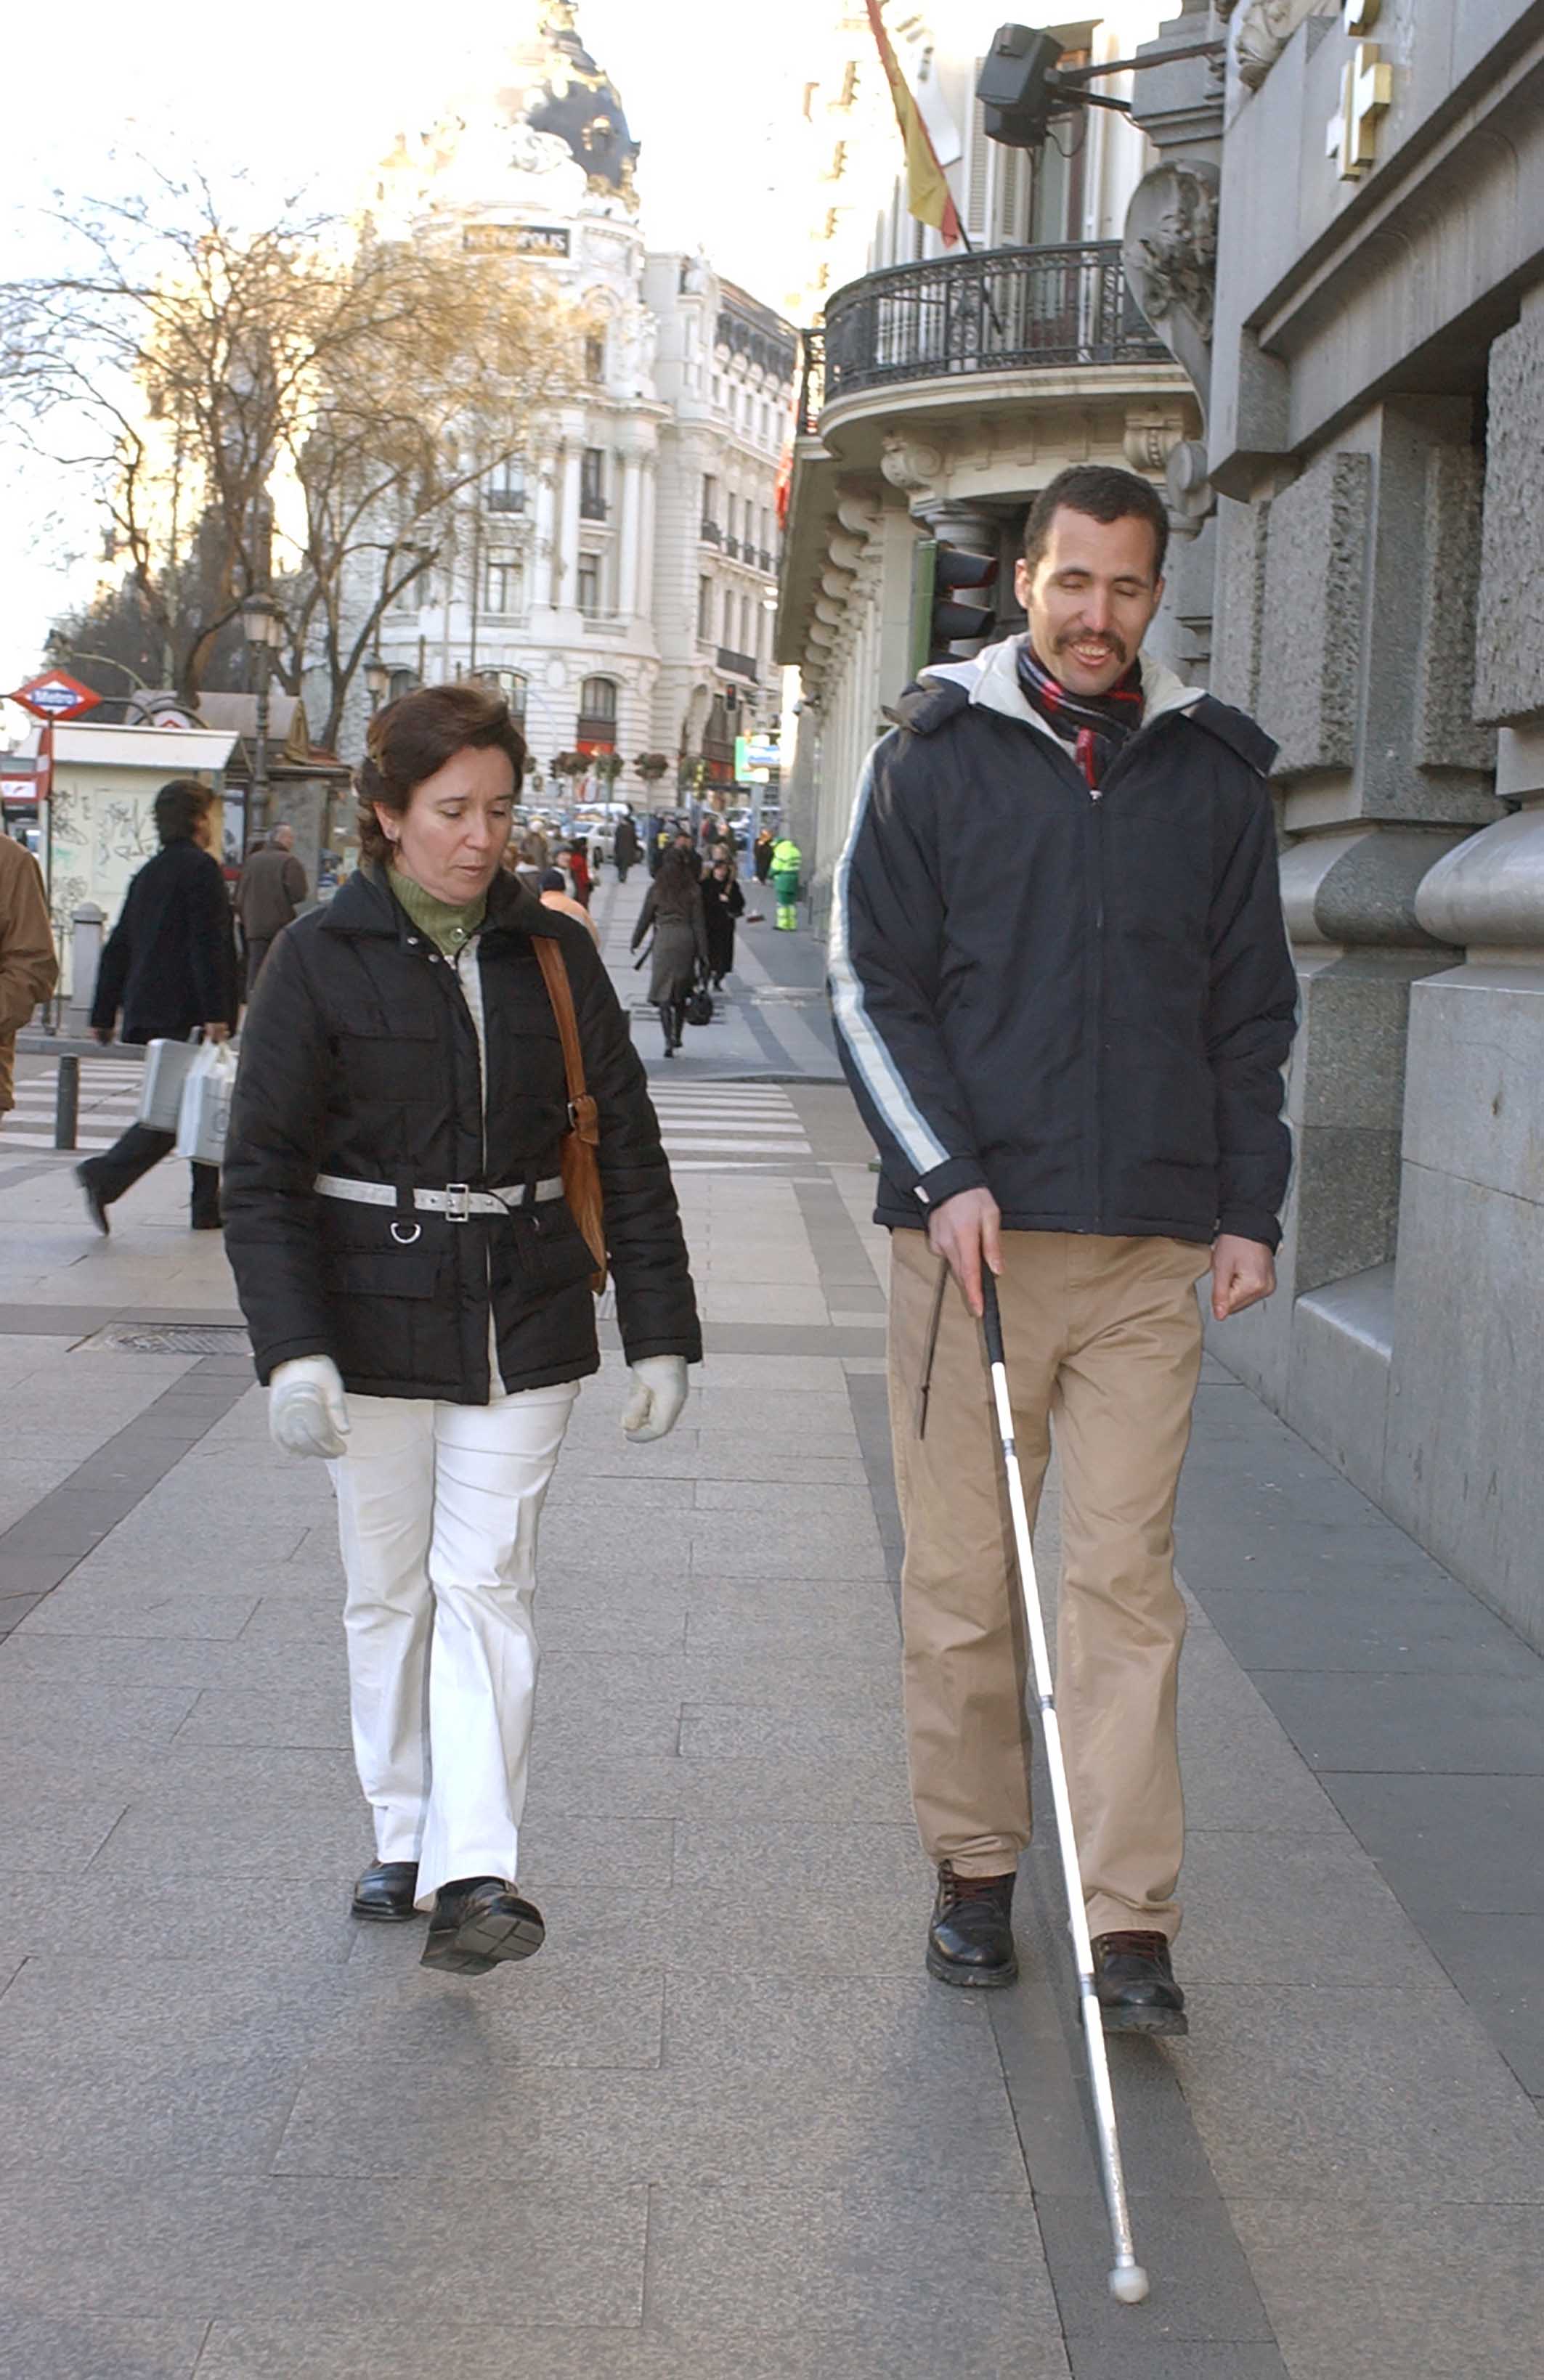 Una técnico de rehabilitación enseña movilidad a una persona ciega extranjera